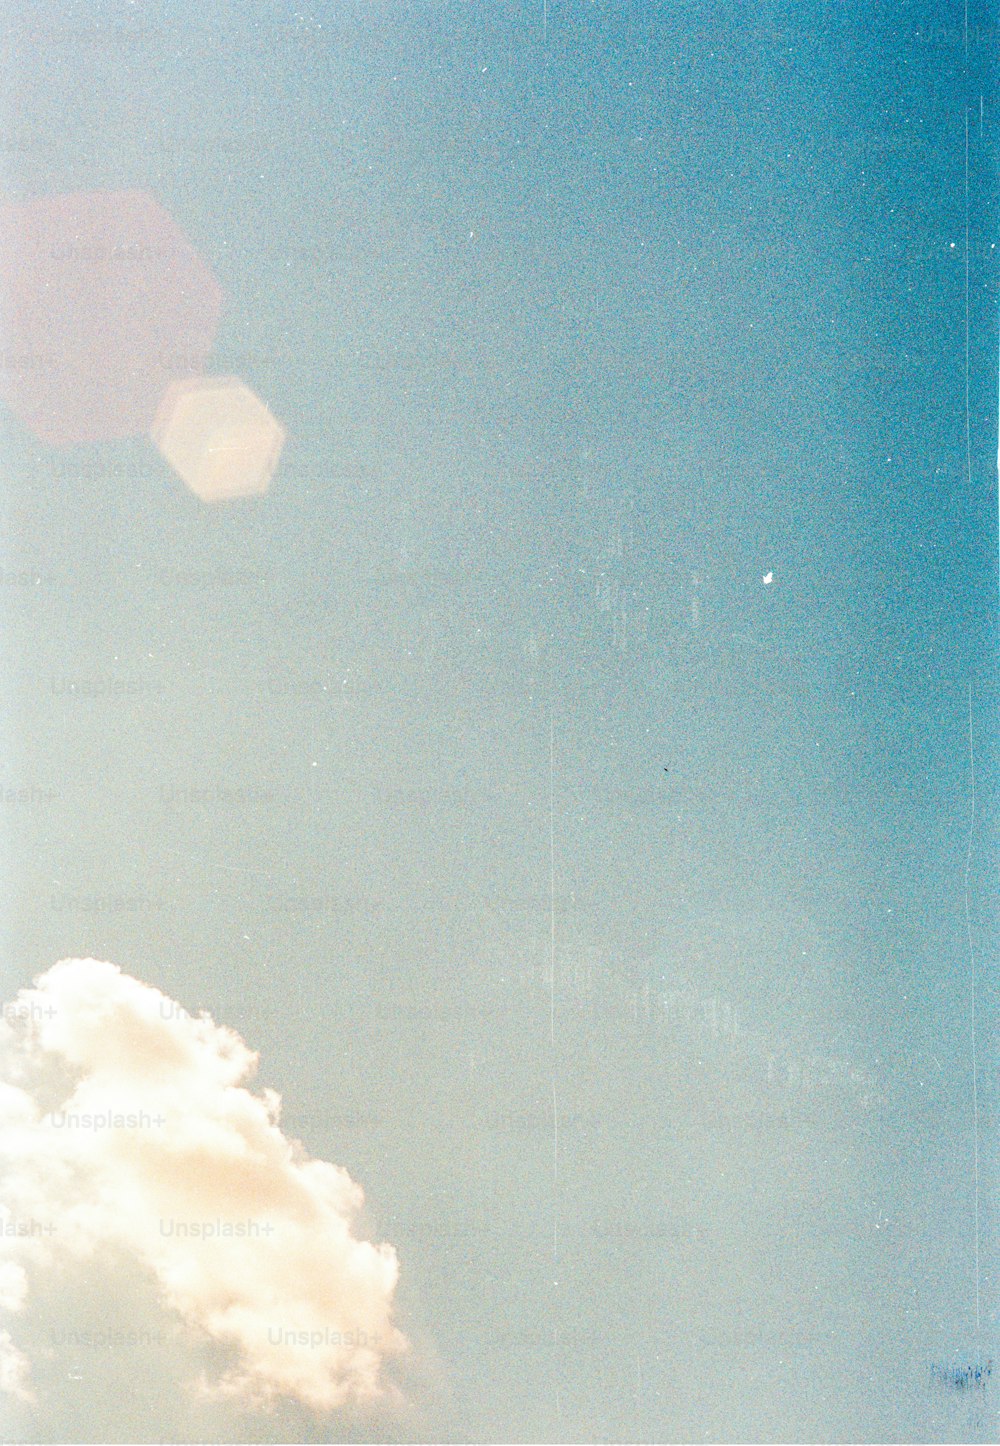 un avion volant dans un ciel bleu avec des nuages